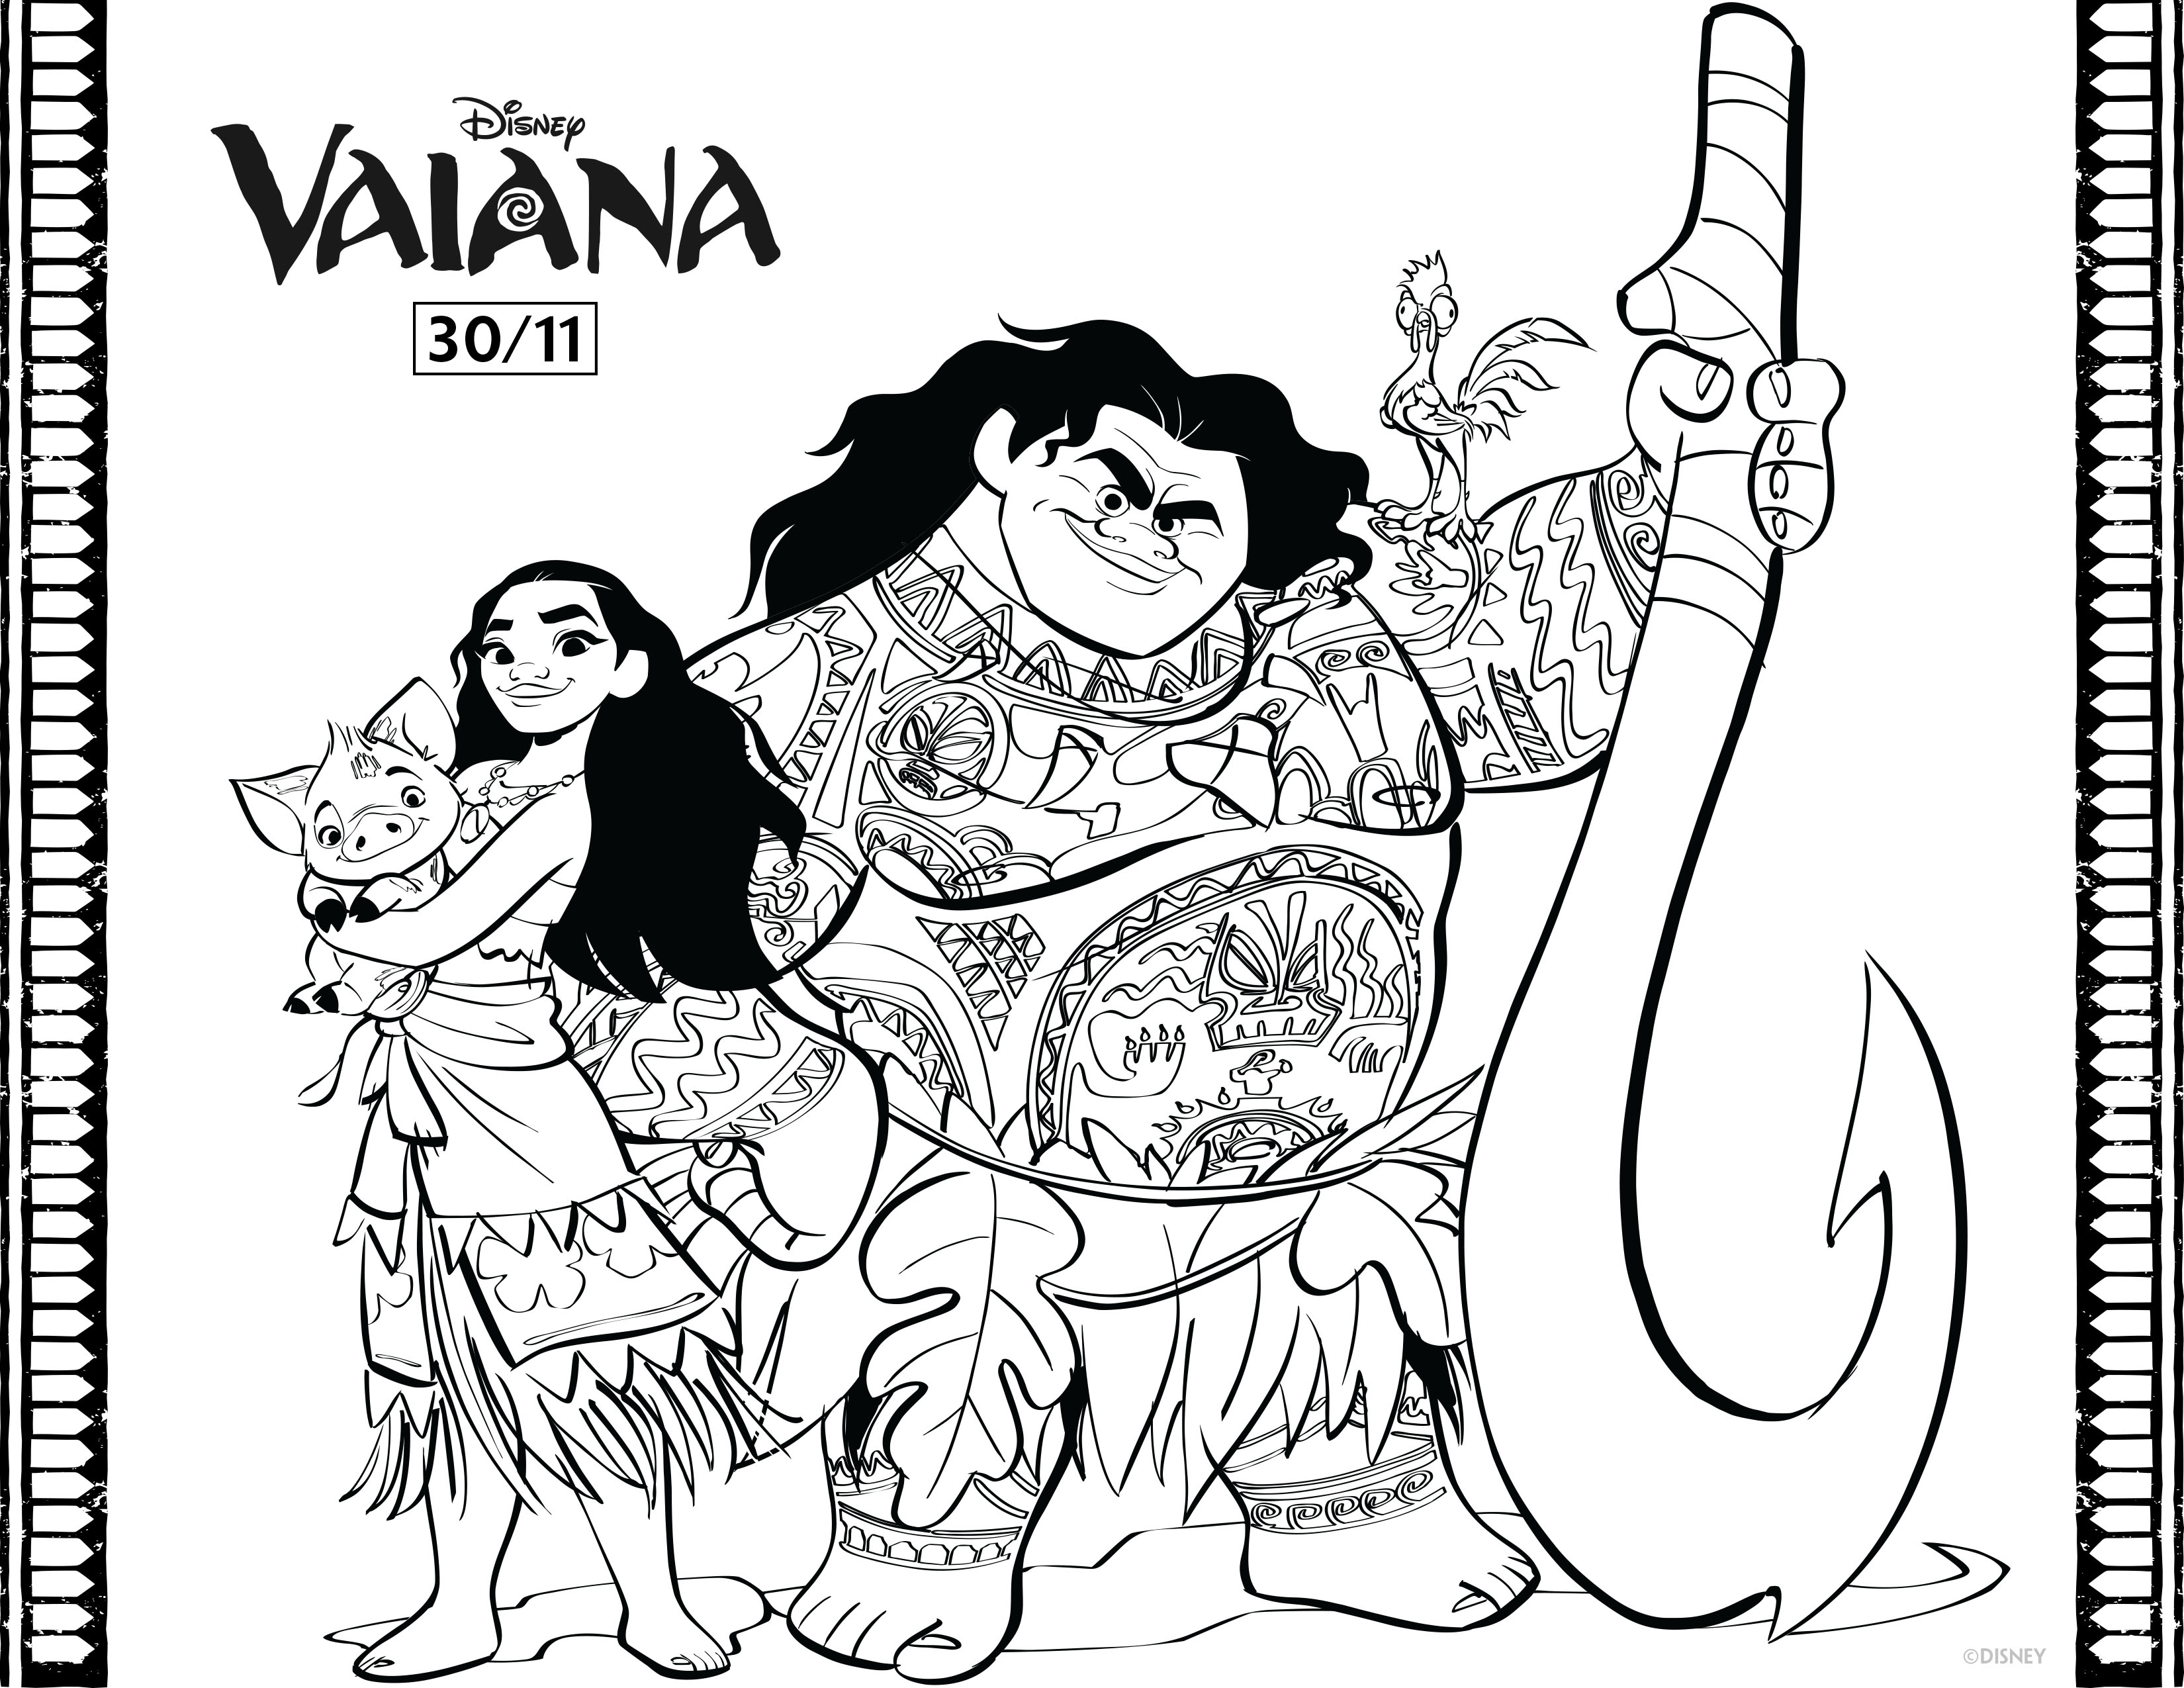 Vaiana et Maui, les nouveaux héros de Disney